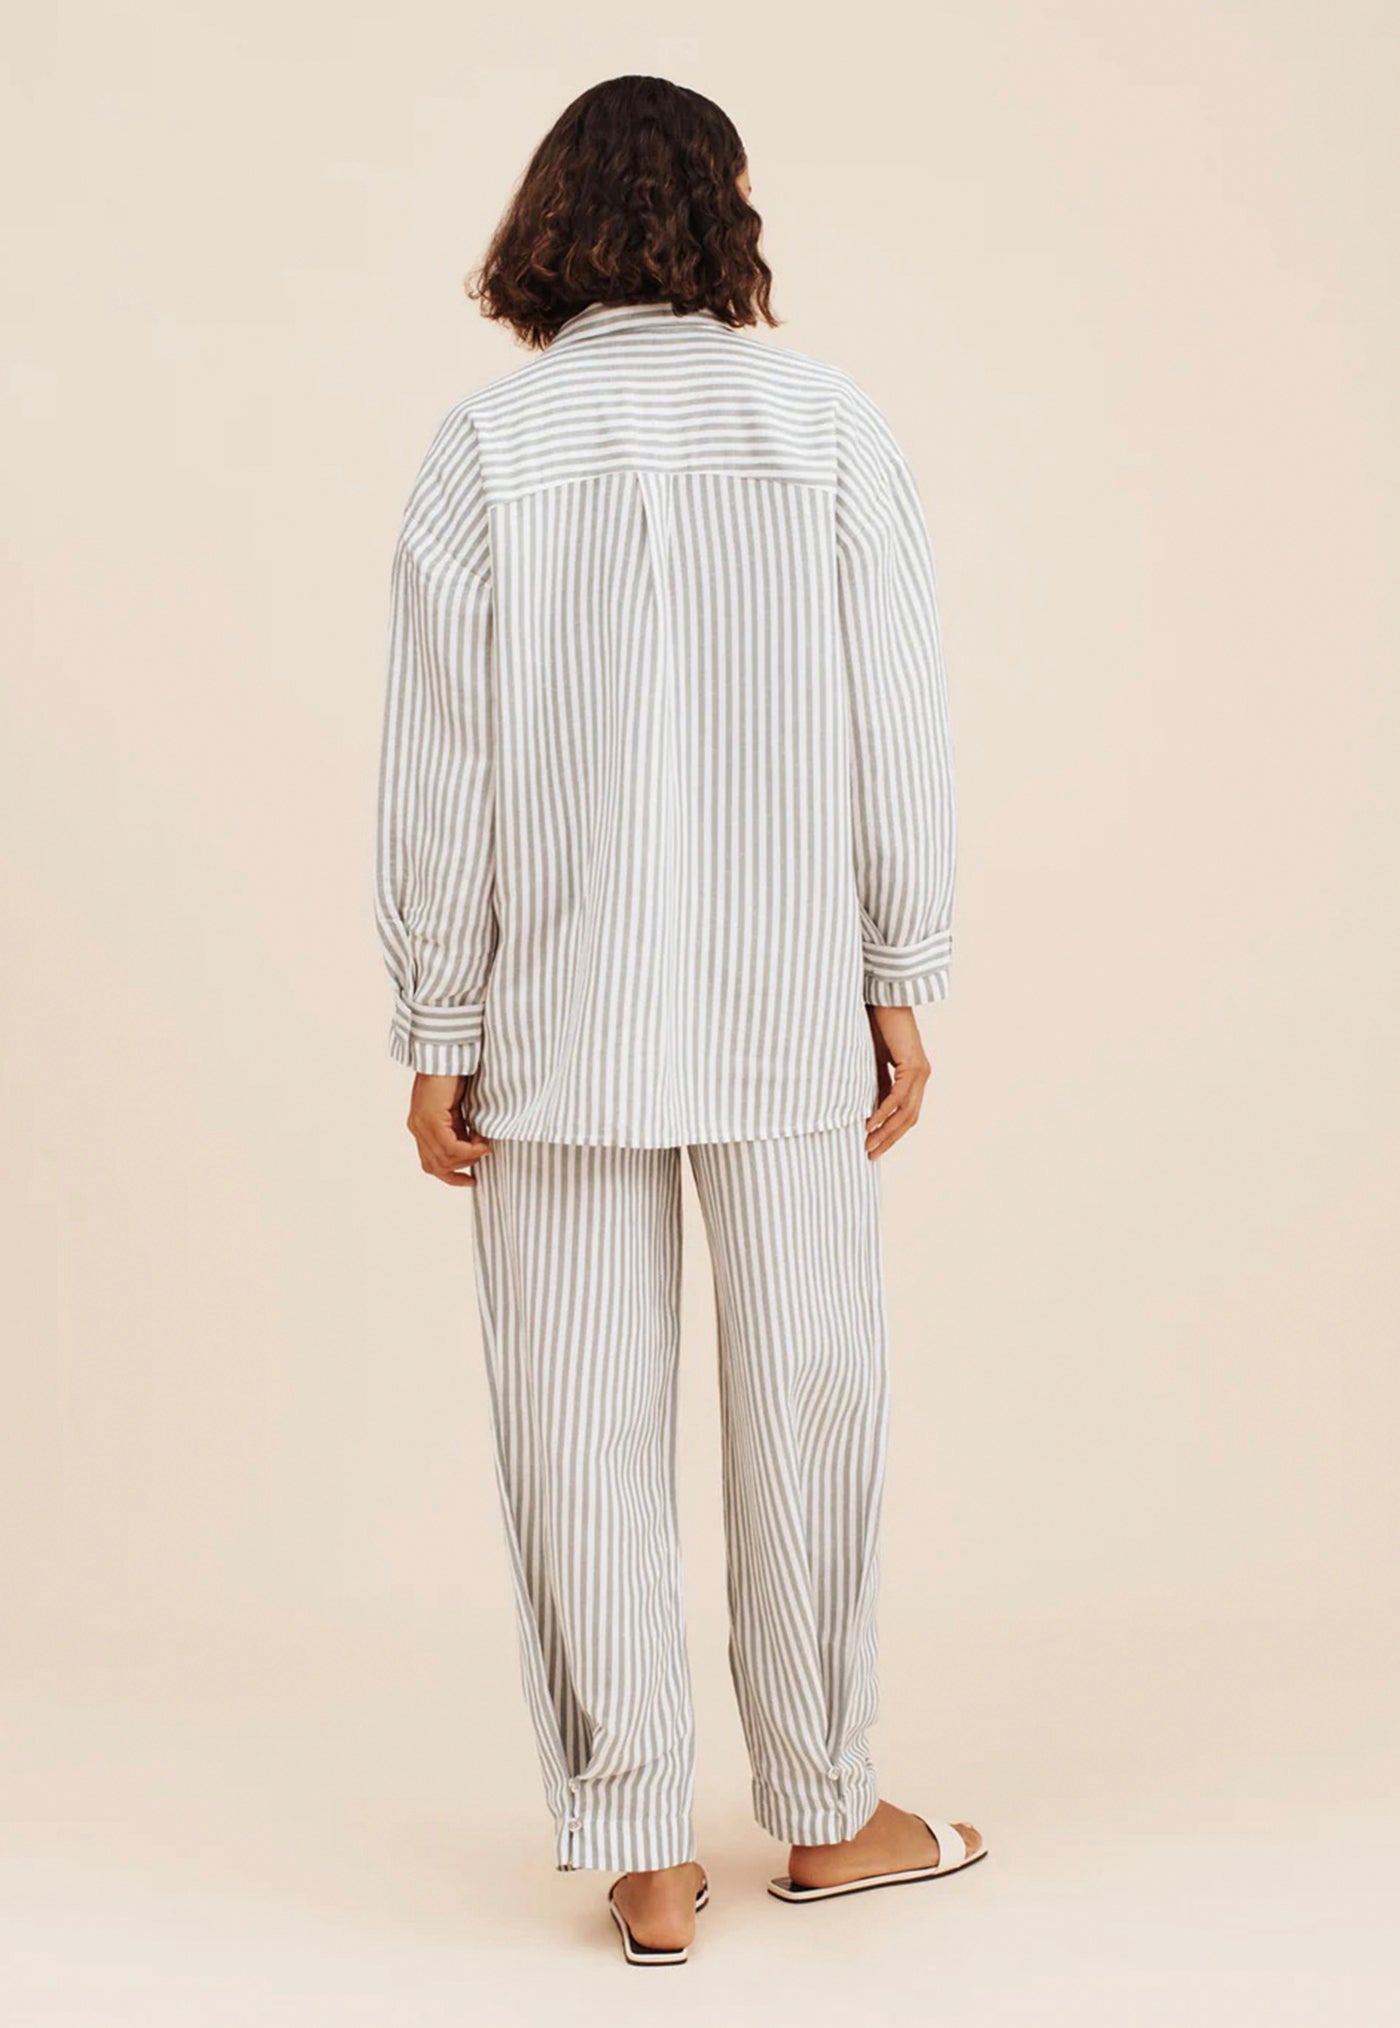 Zadie Shirt - Seagrass Stripe sold by Angel Divine